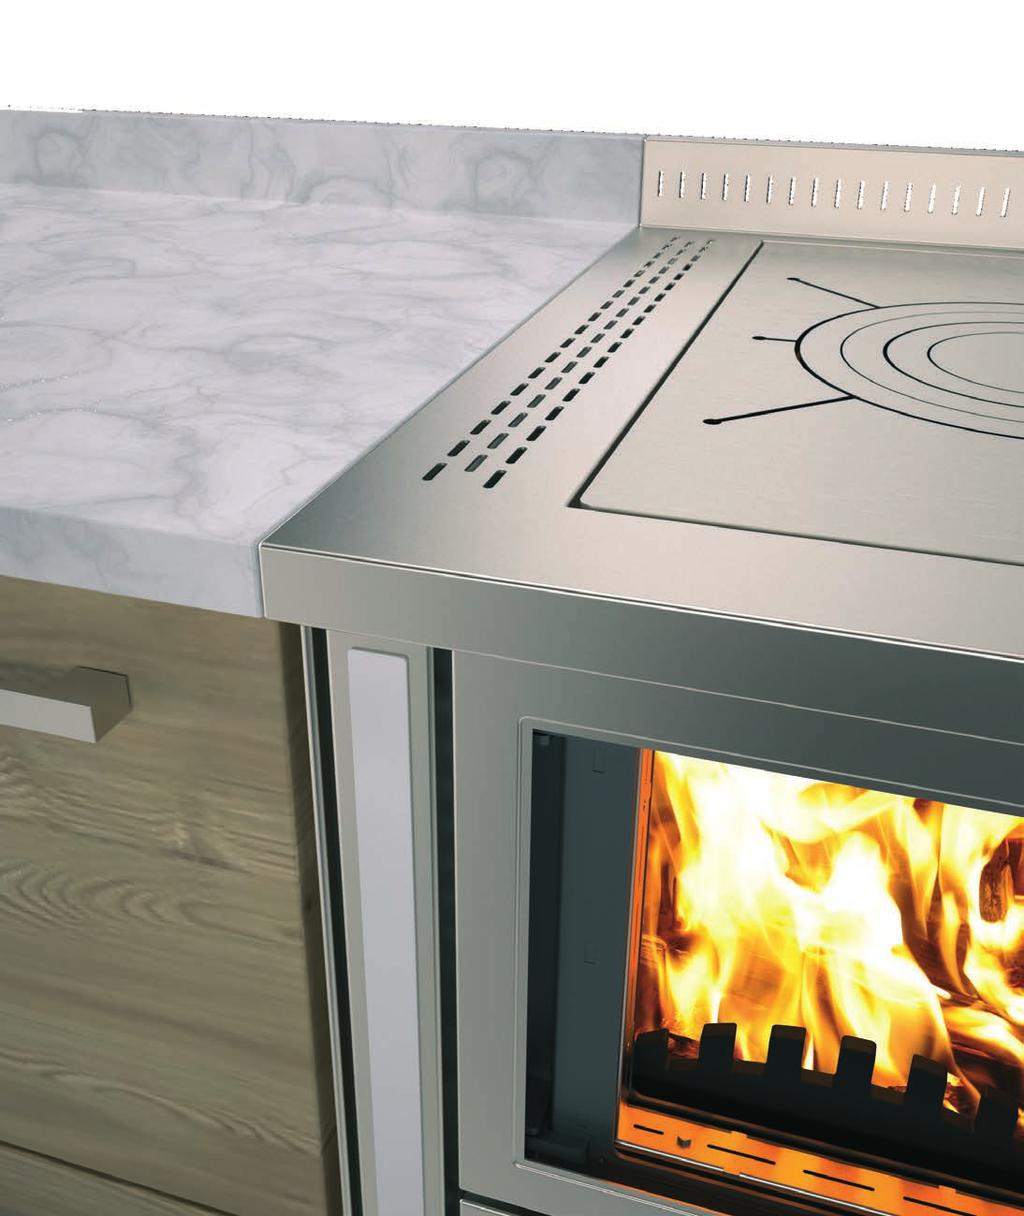 Nuova Serie RI - RVI. Il calore solo dove serve. Le cucine a legna Serie RI e RVI sono state progettate per l installazione tra i mobili in massima sicurezza.